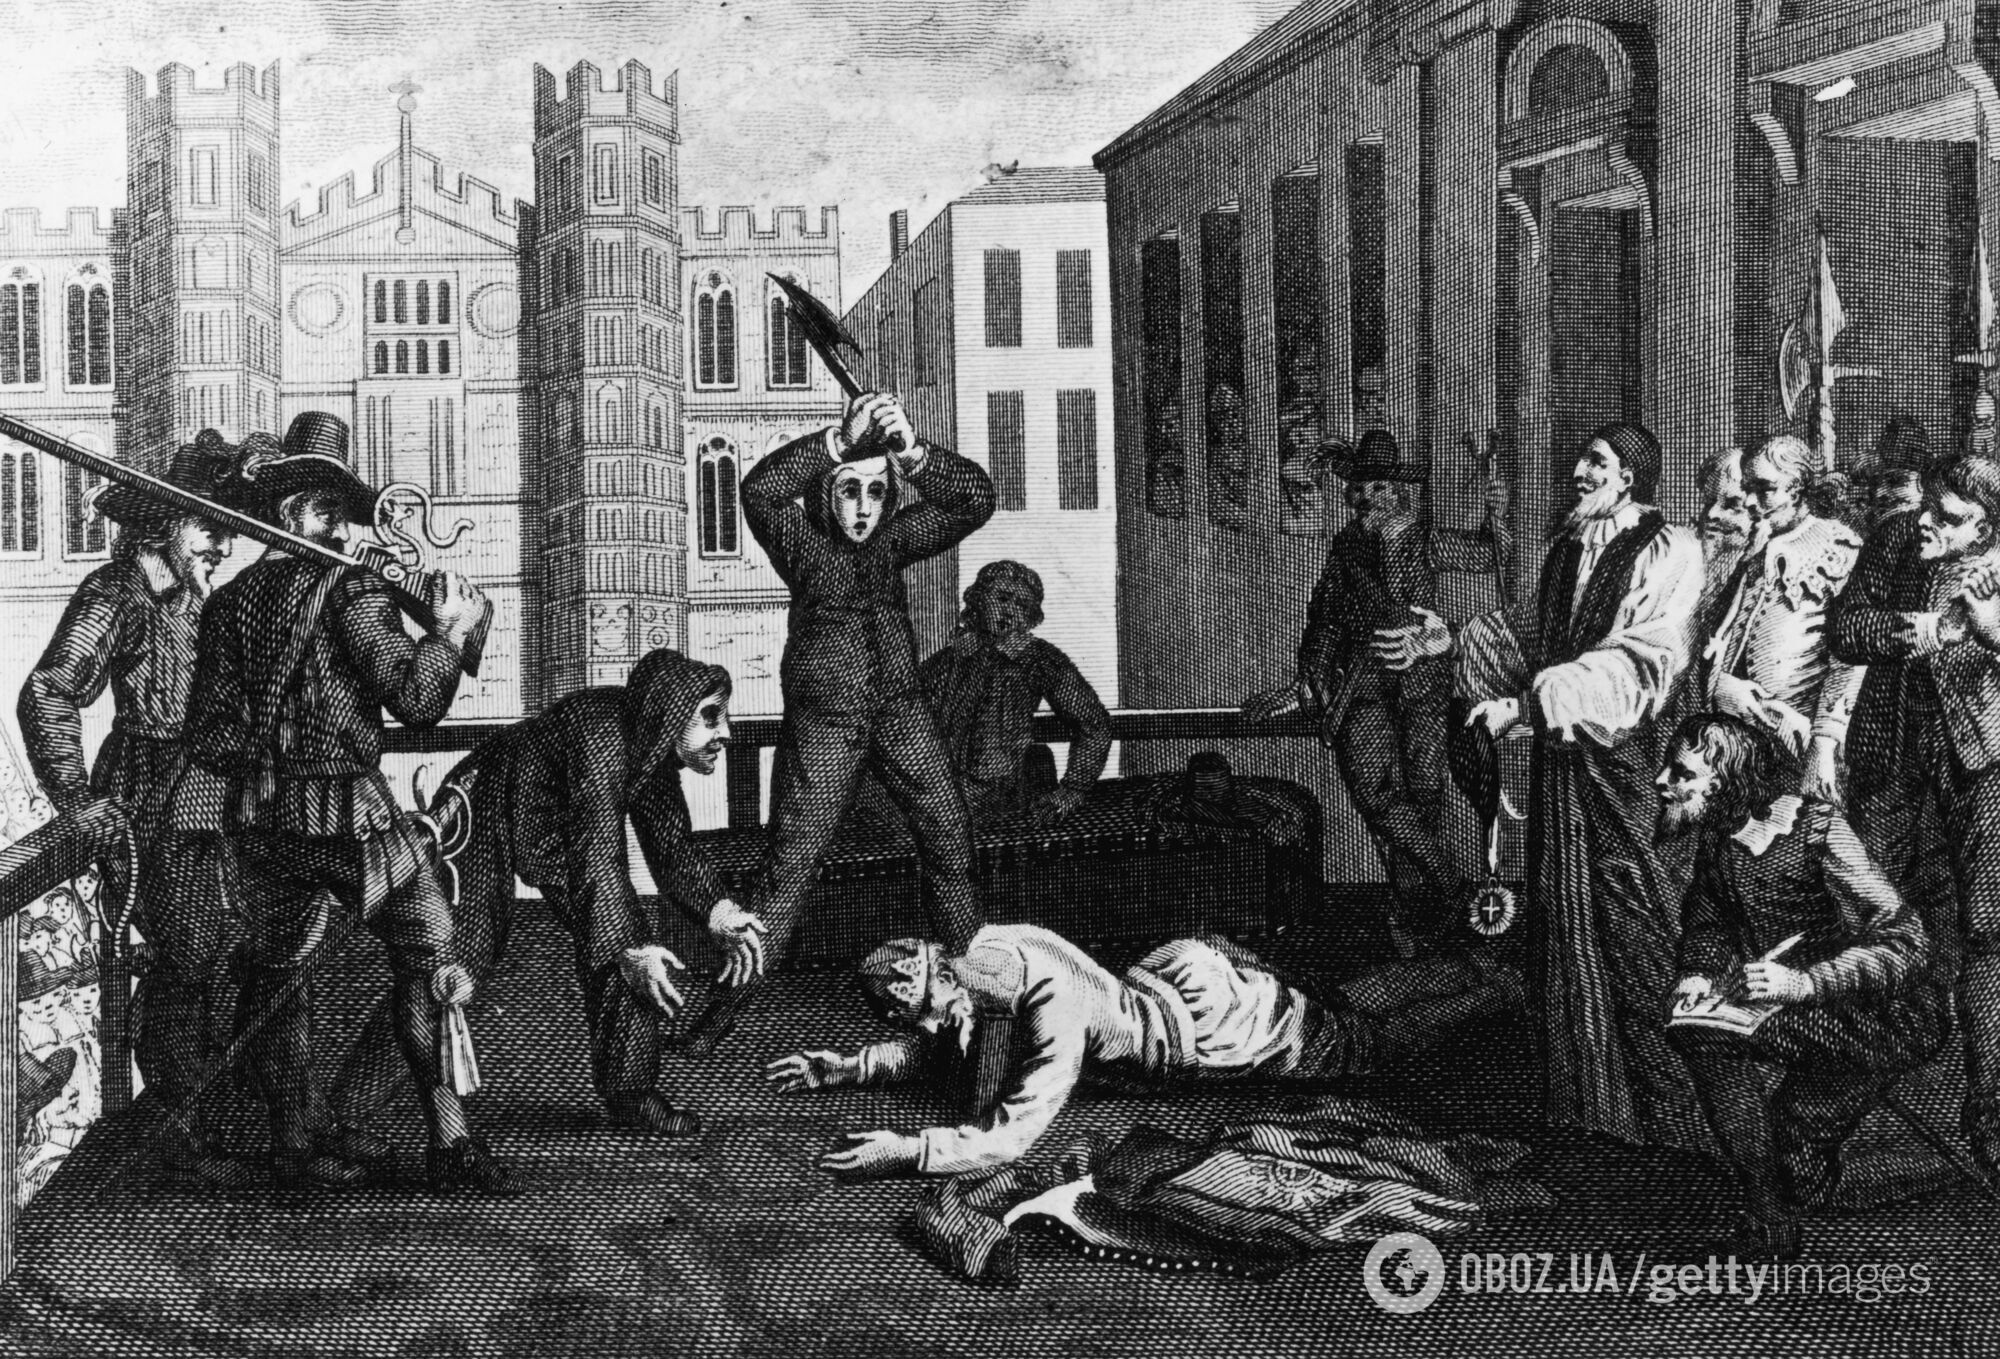 Первого приговорили к смертной казни, отрубив голову, а второй отомстил за отца: что известно о предшественниках-тезках Чарльза III